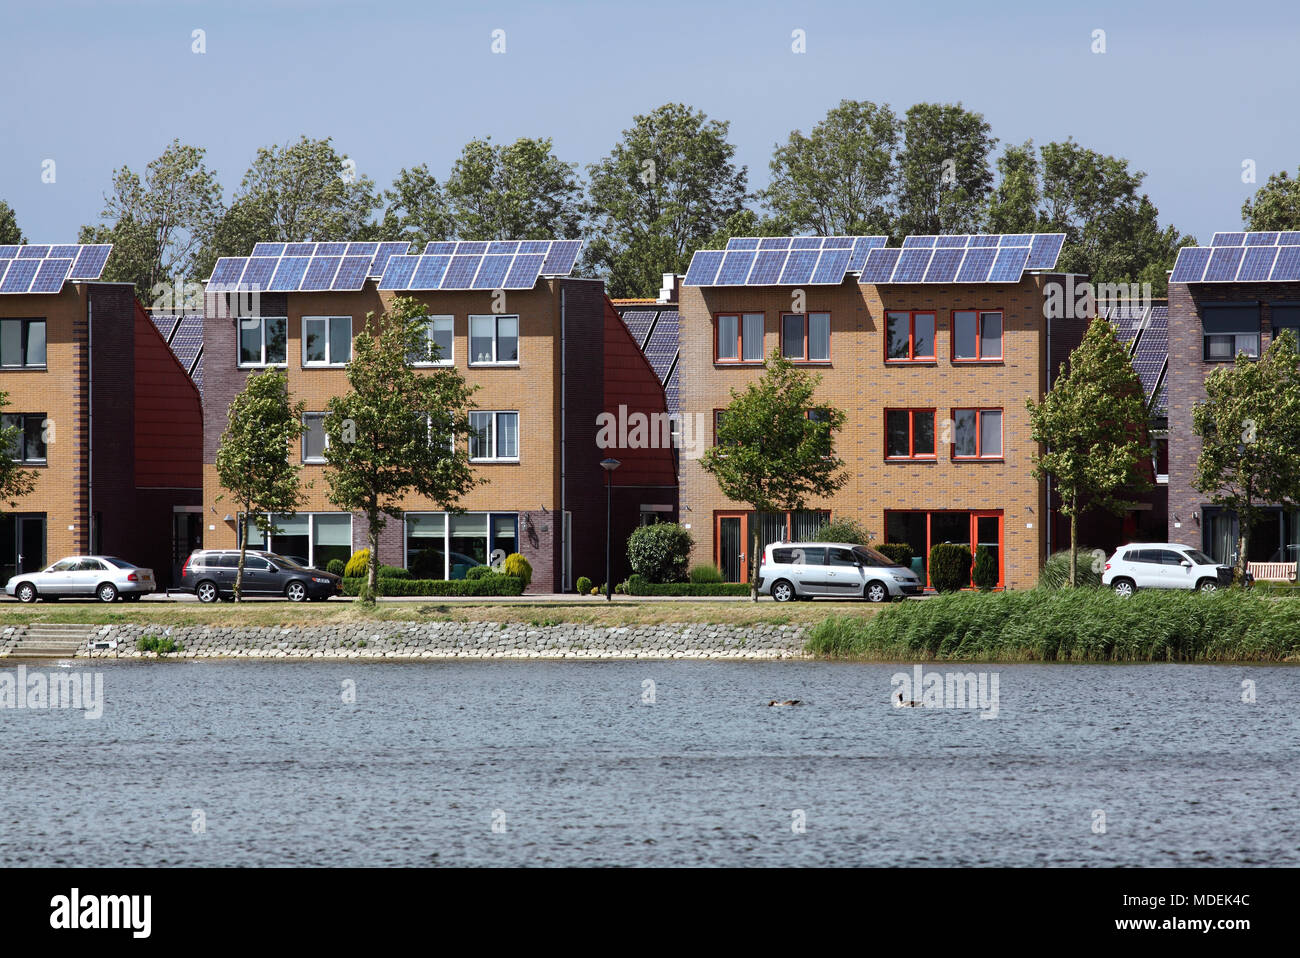 Case e rabboccato con celle fotovoltaiche in Stad van de Zon (Città del Sole), un borgo sostenibile di Heerhugowaard, North Holland, Paesi Bassi. Foto Stock